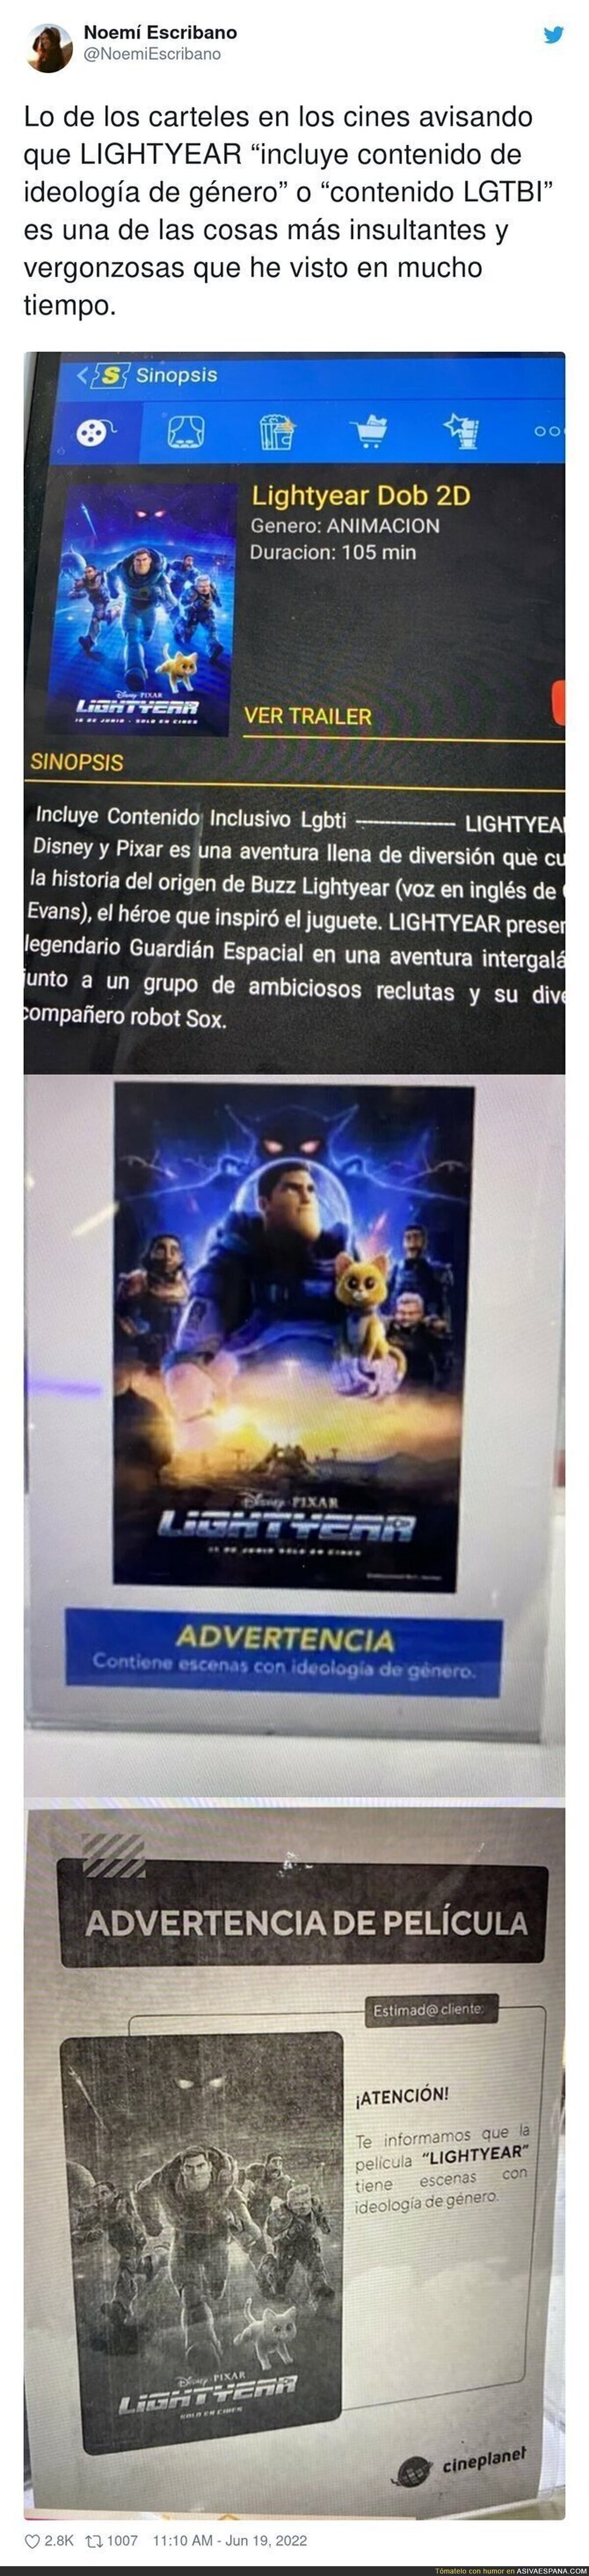 Vergüenza absoluta por el mensaje que ponen algunos cines ante la proyección de 'Lightyear'